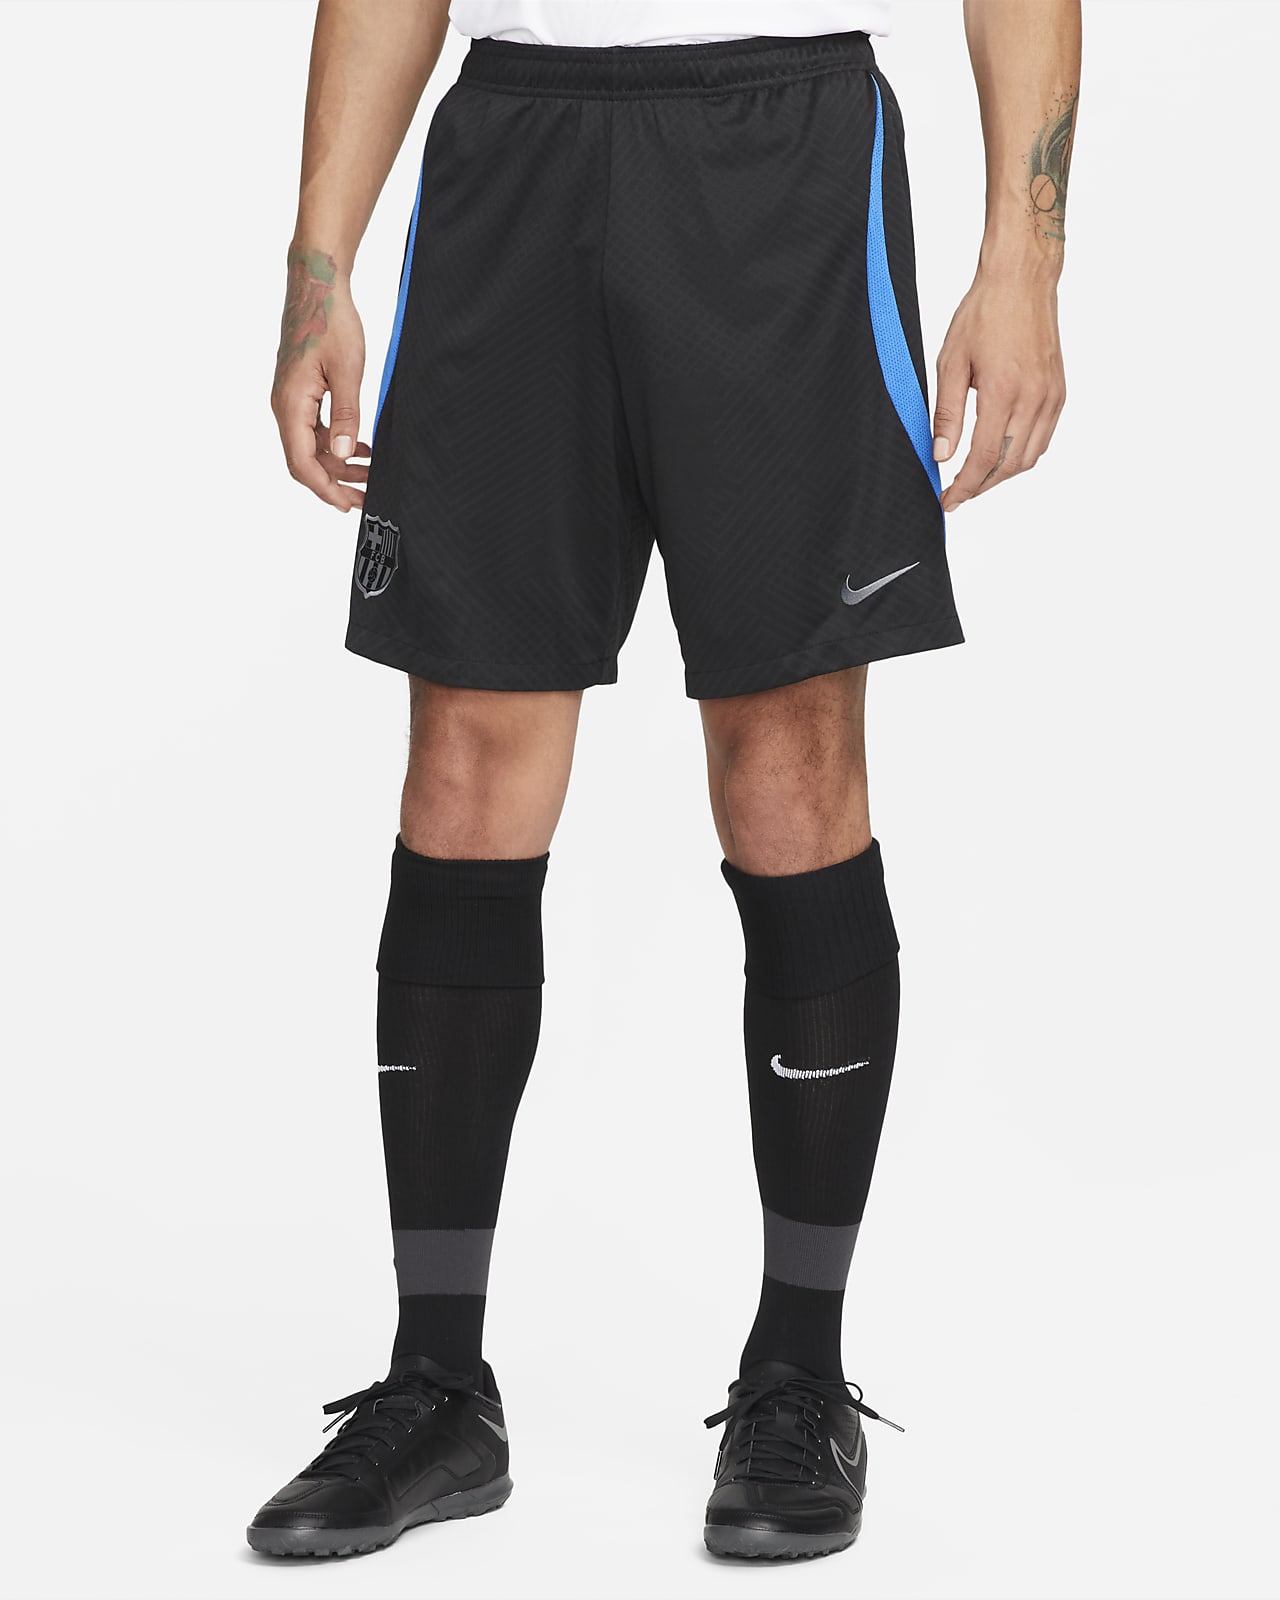 Shorts tejidos de fútbol para hombre Dri-FIT FC Barcelona Strike. Nike. com